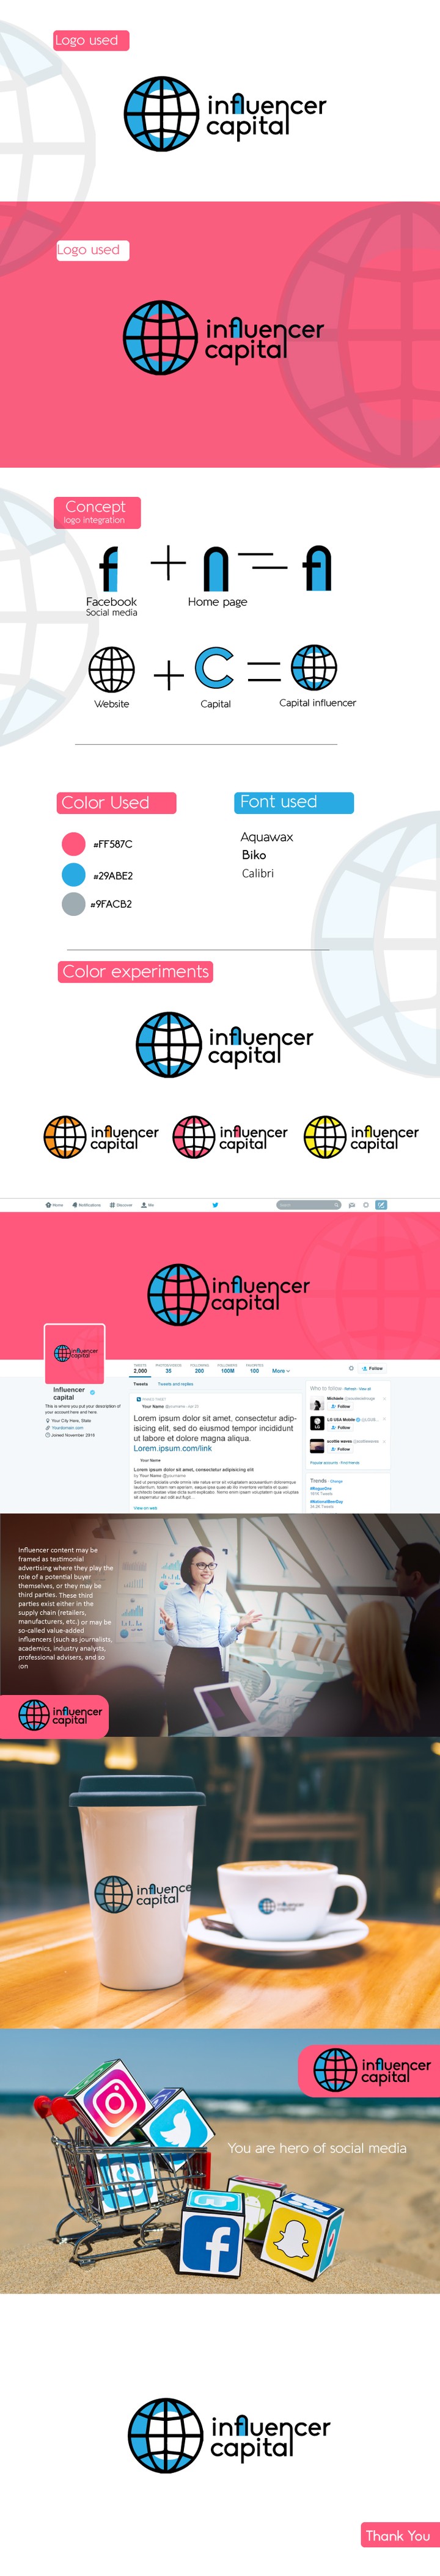 (influencer capital (Logo for Social media